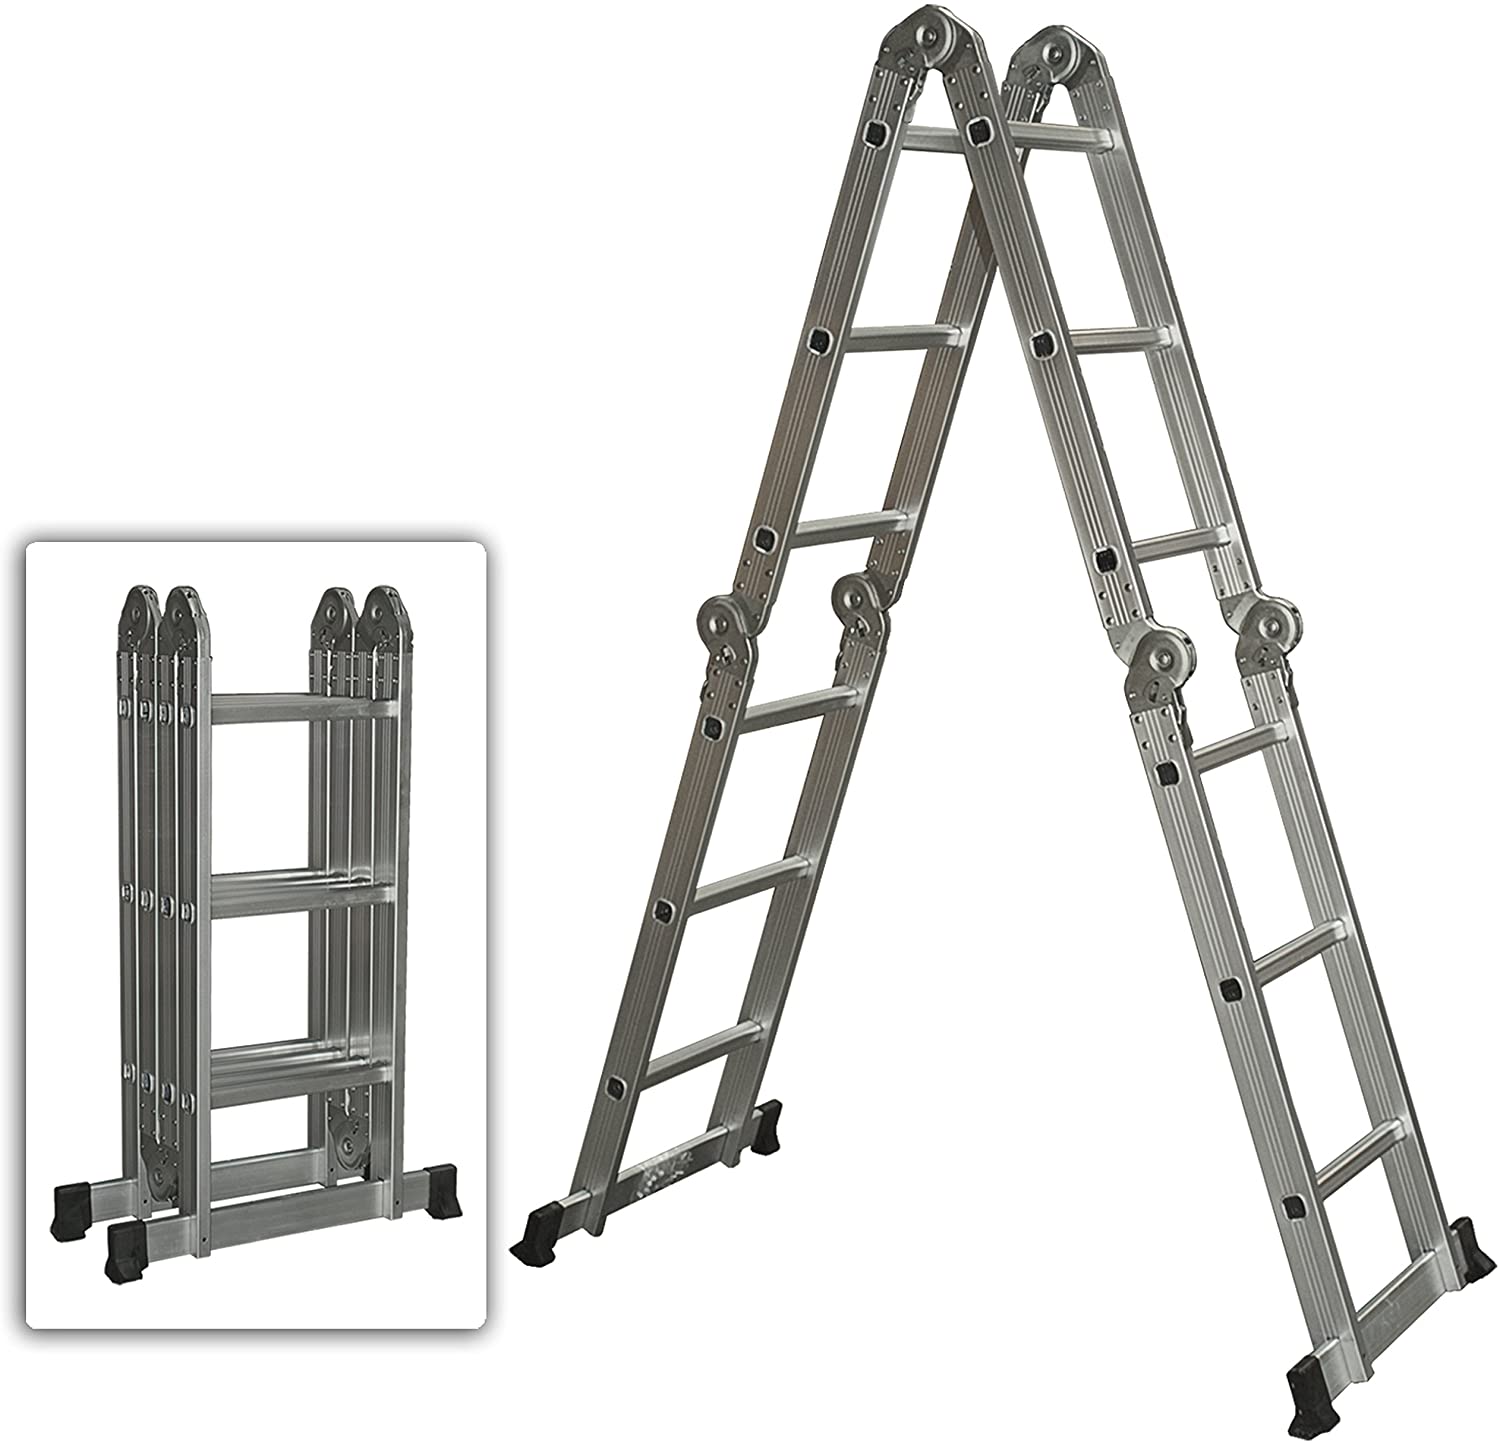 the aluminum ladder